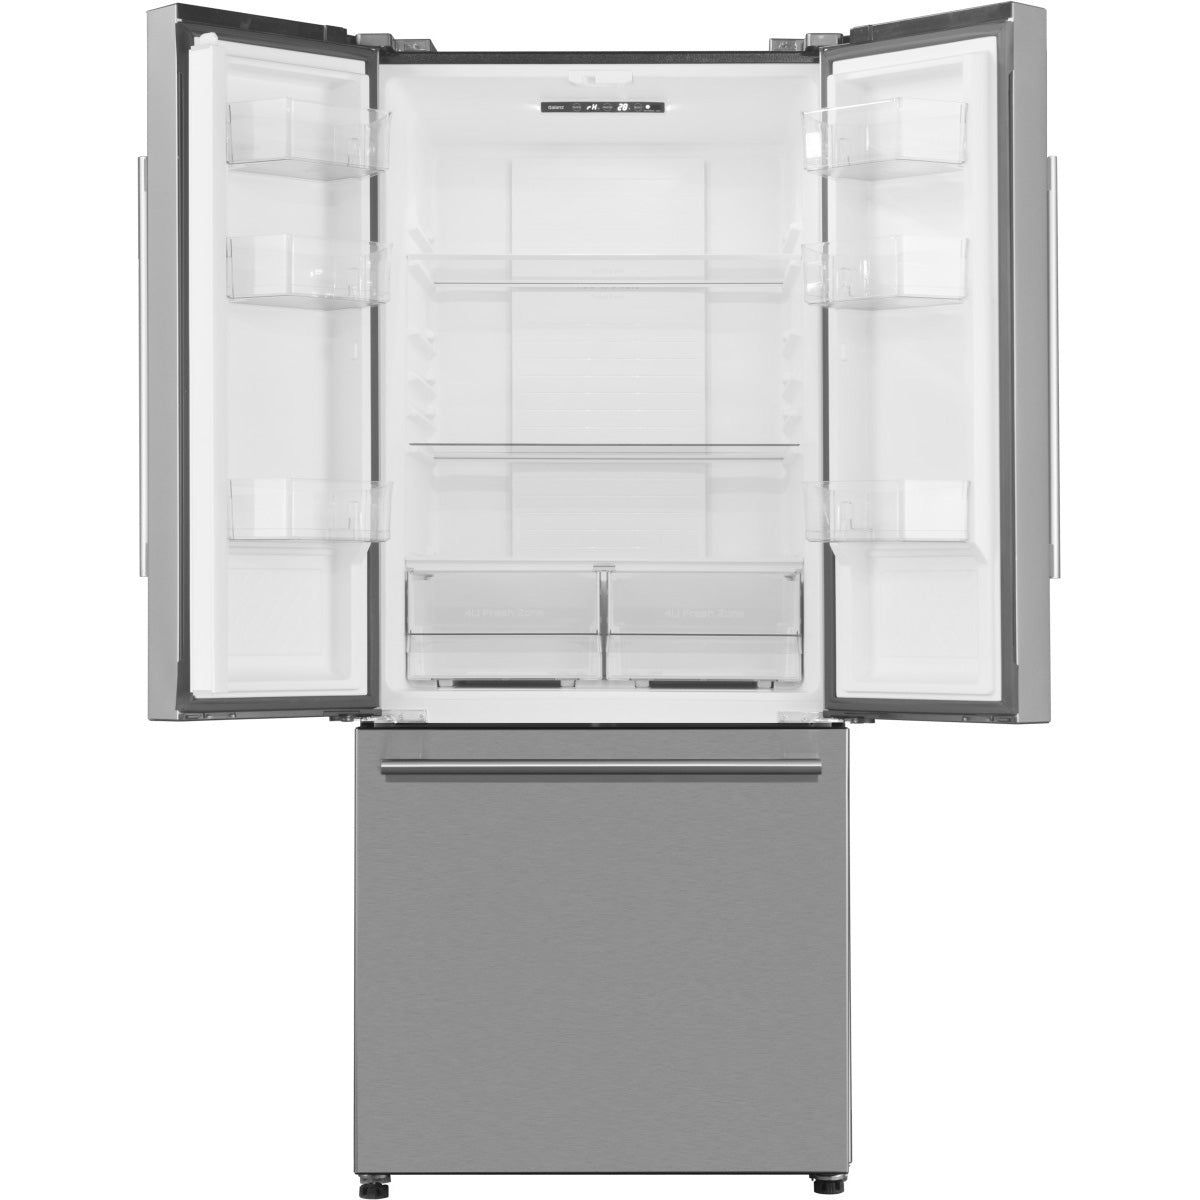 Galanz 28 in. 16 Cu. Ft. 3-Door French Door Refrigerator In Stainless Steel (GLR16FS2E16) front, doors open